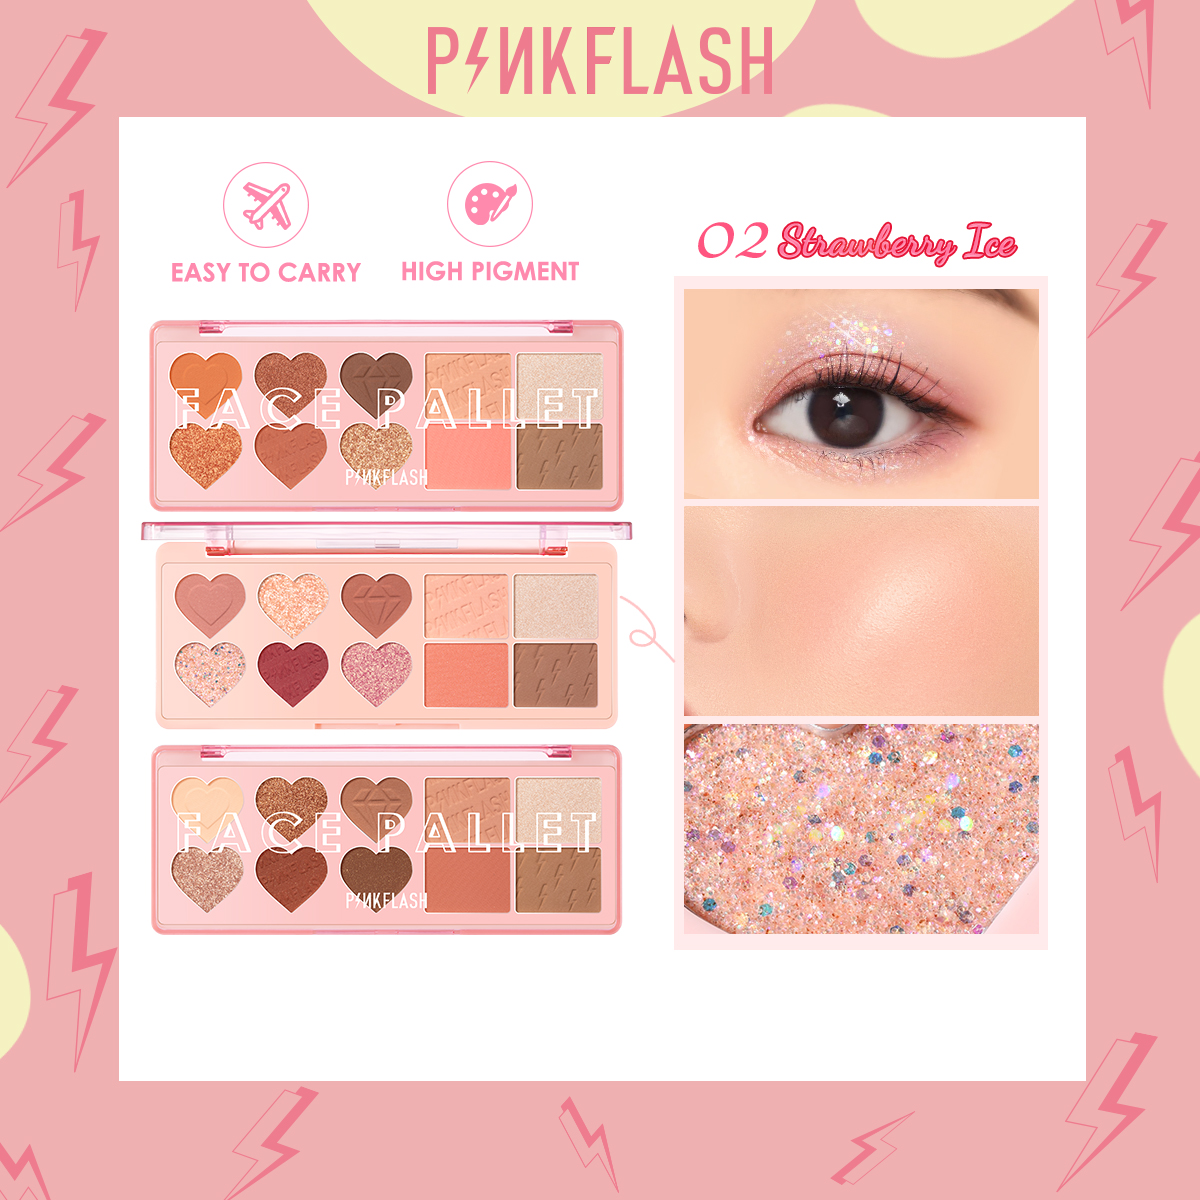 [Hàng mới về] Bảng Phấn Trang Điểm Pinkflash Ohmylove 4 Trong 1 Gồm Phấn Mắt/ Phấn Má Hồng/ Phấn Bắt Sáng/ Phấn Tạo Khối